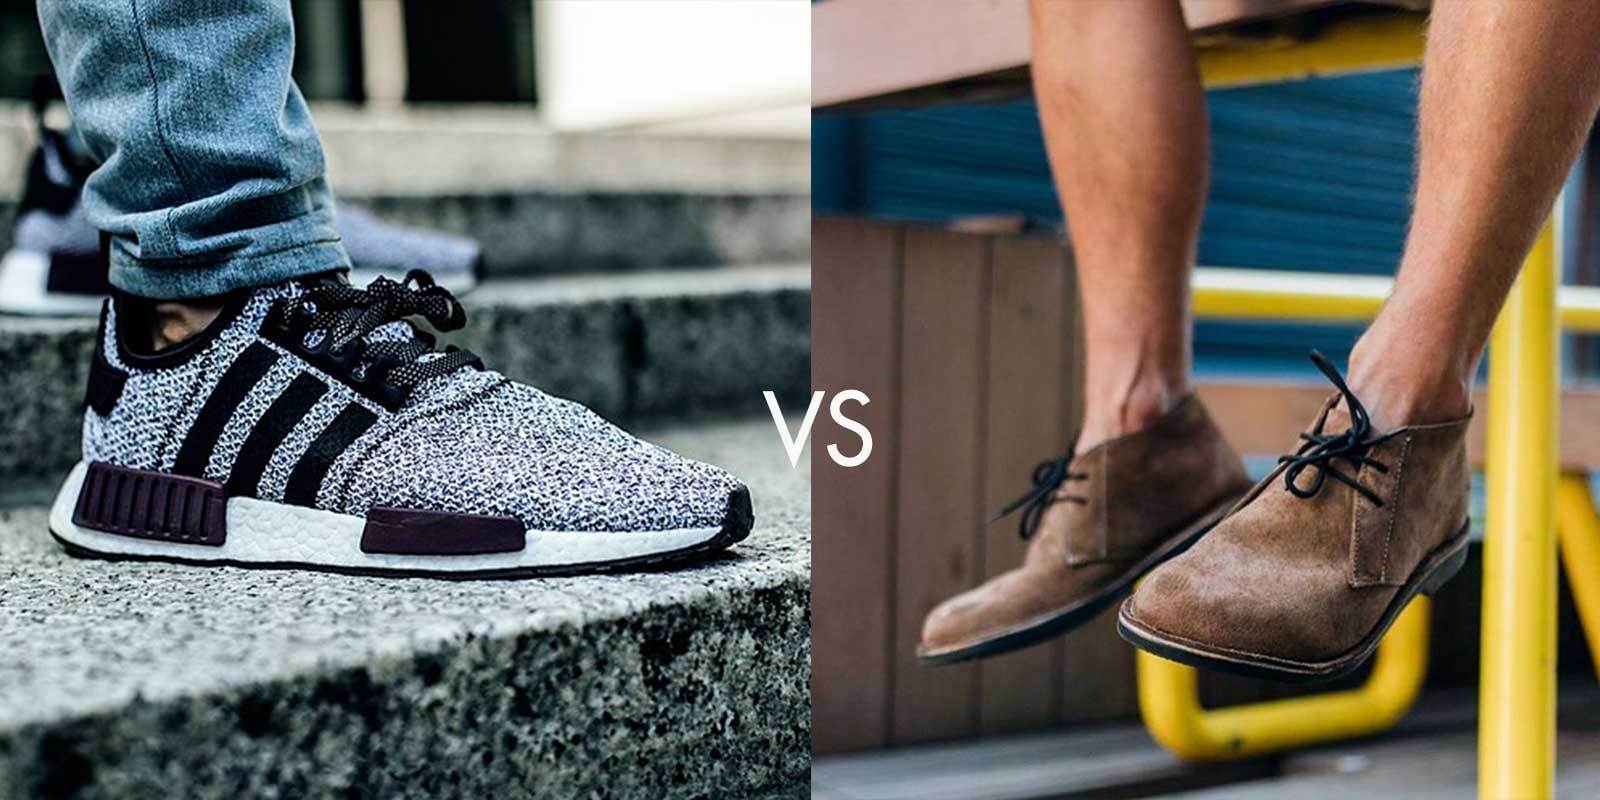 The Chukka boot VS the Sneaker: Veldskoen